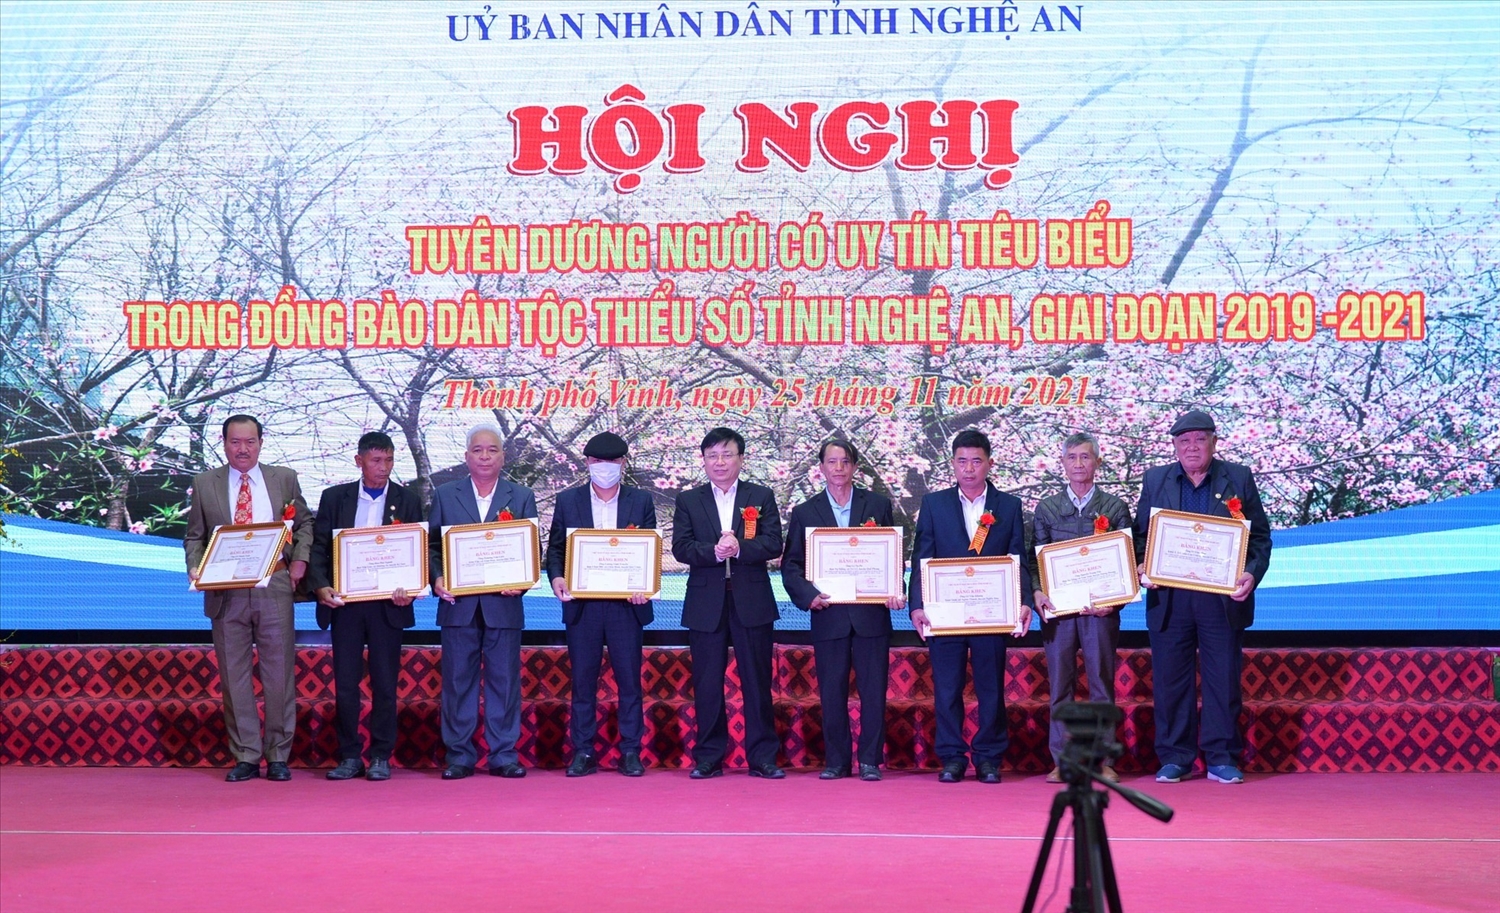 Những Người có uy tín tiêu biểu được Chủ tịch UBND tỉnh Nghệ An tuyên dương khen thưởng năm 2021